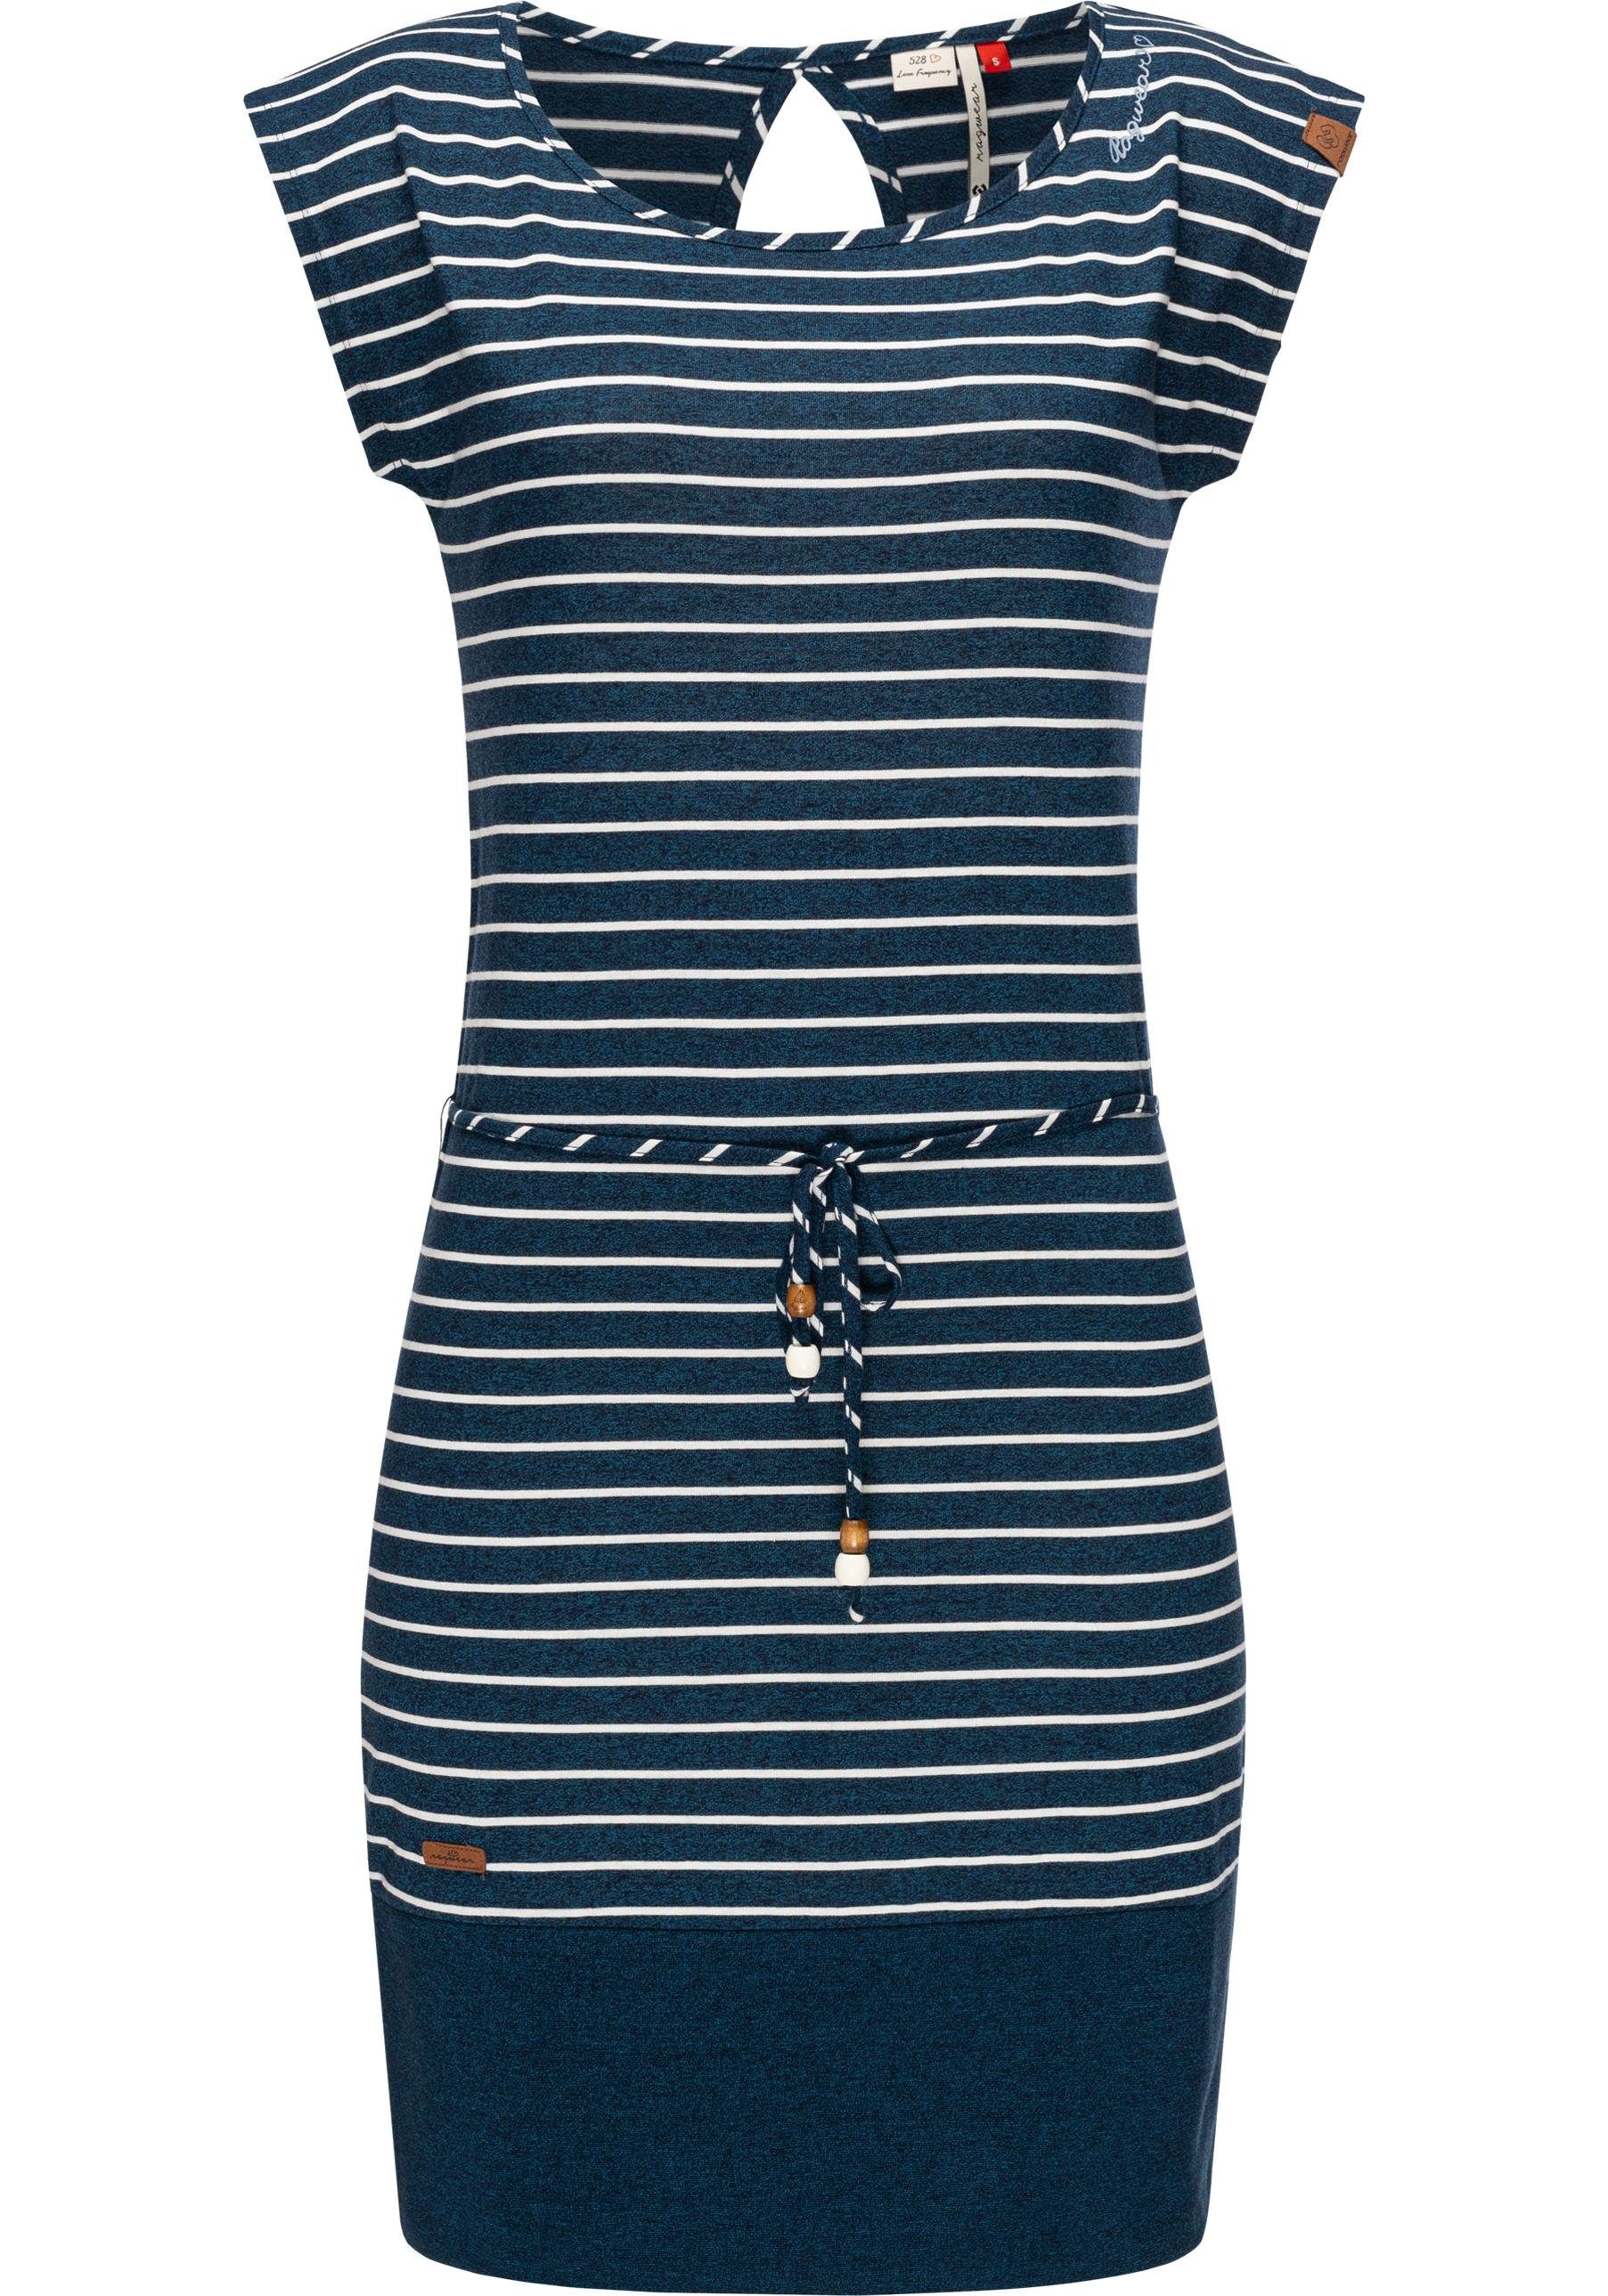 Ragwear Sommerkleid »Soho Stripes II« leichtes Baumwoll-Kleid mit  angesagtem Streifenmuster online kaufen | OTTO